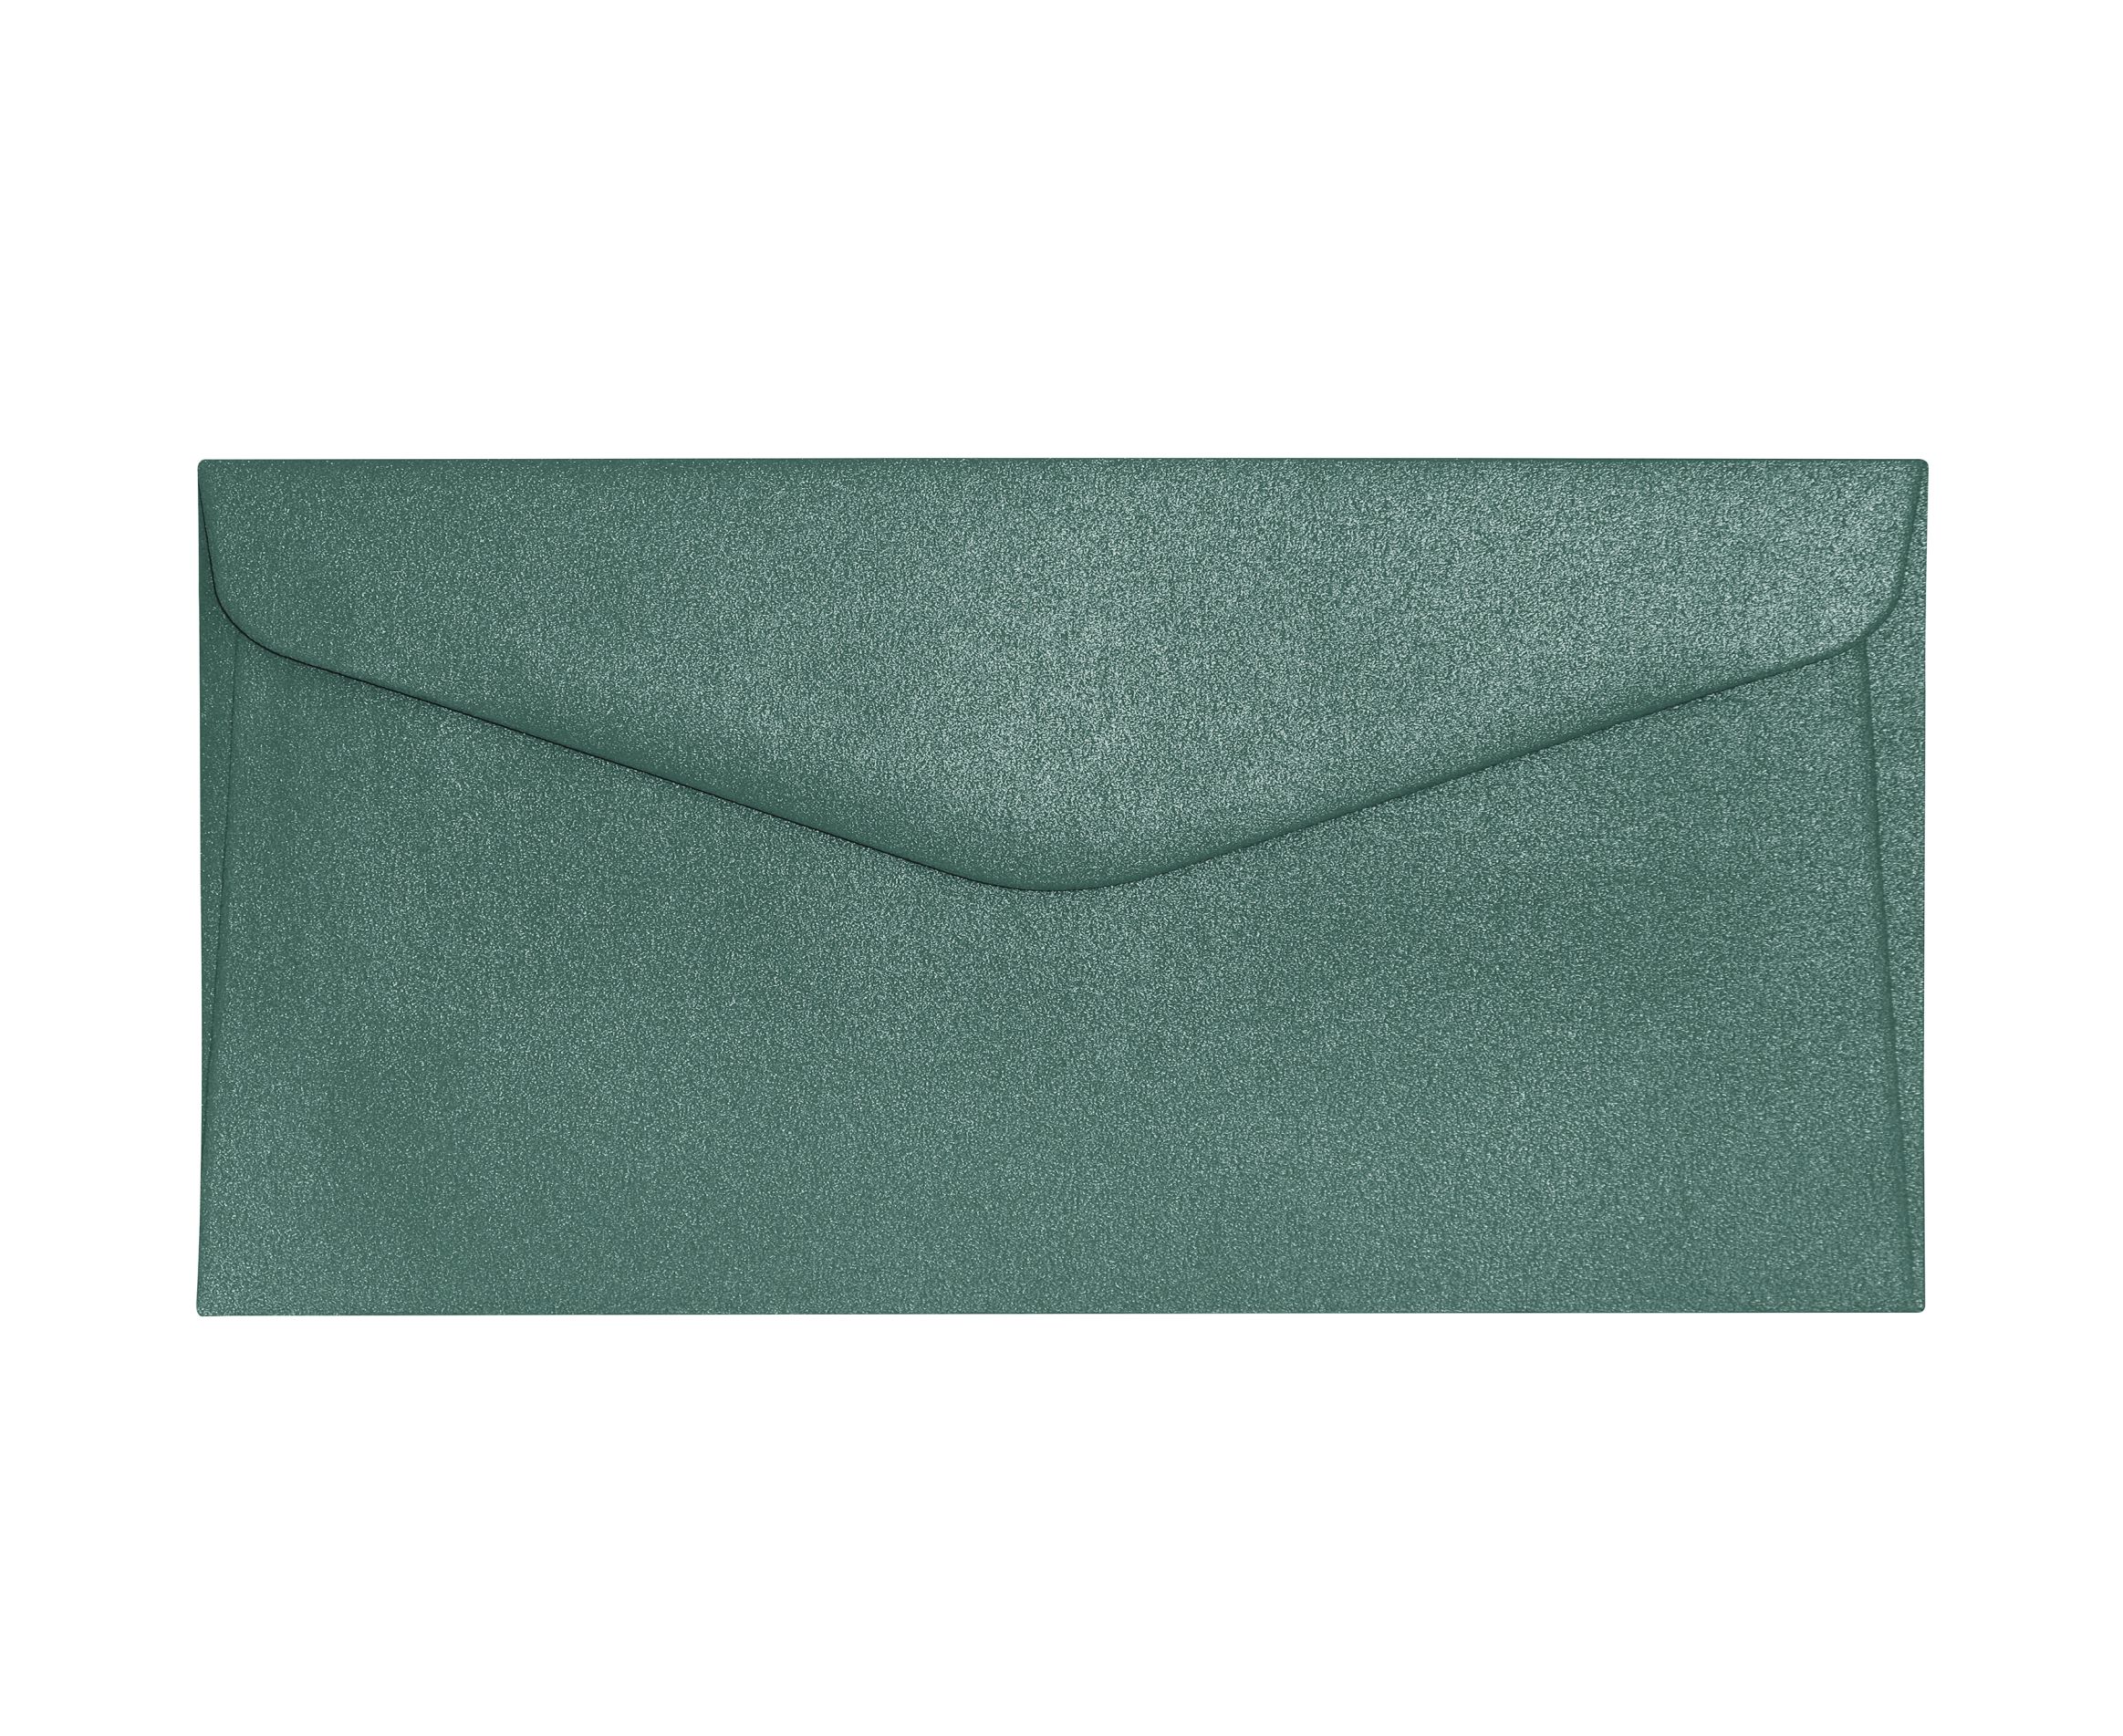 Galeria Papieru obálky DL Pearl zelená 150g, 10ks